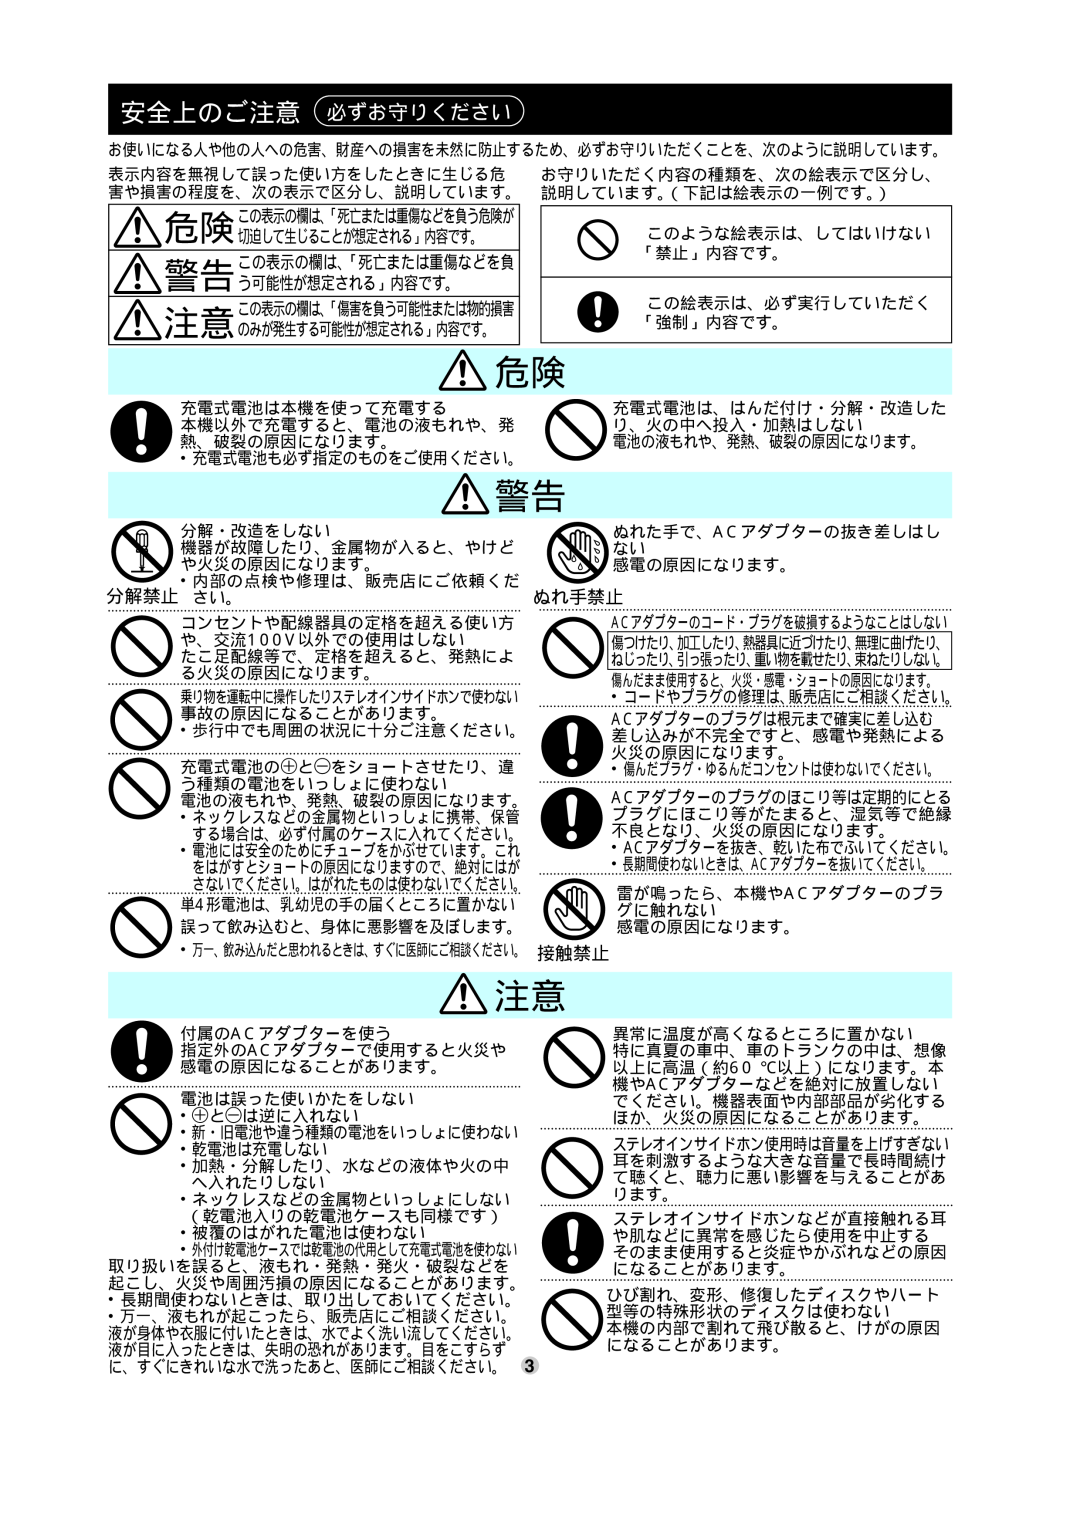 Panasonic SL-CT582V operating instructions 安全上のご注意 必ずお守りください, ぬれ手禁止, 分解禁止 さい。 